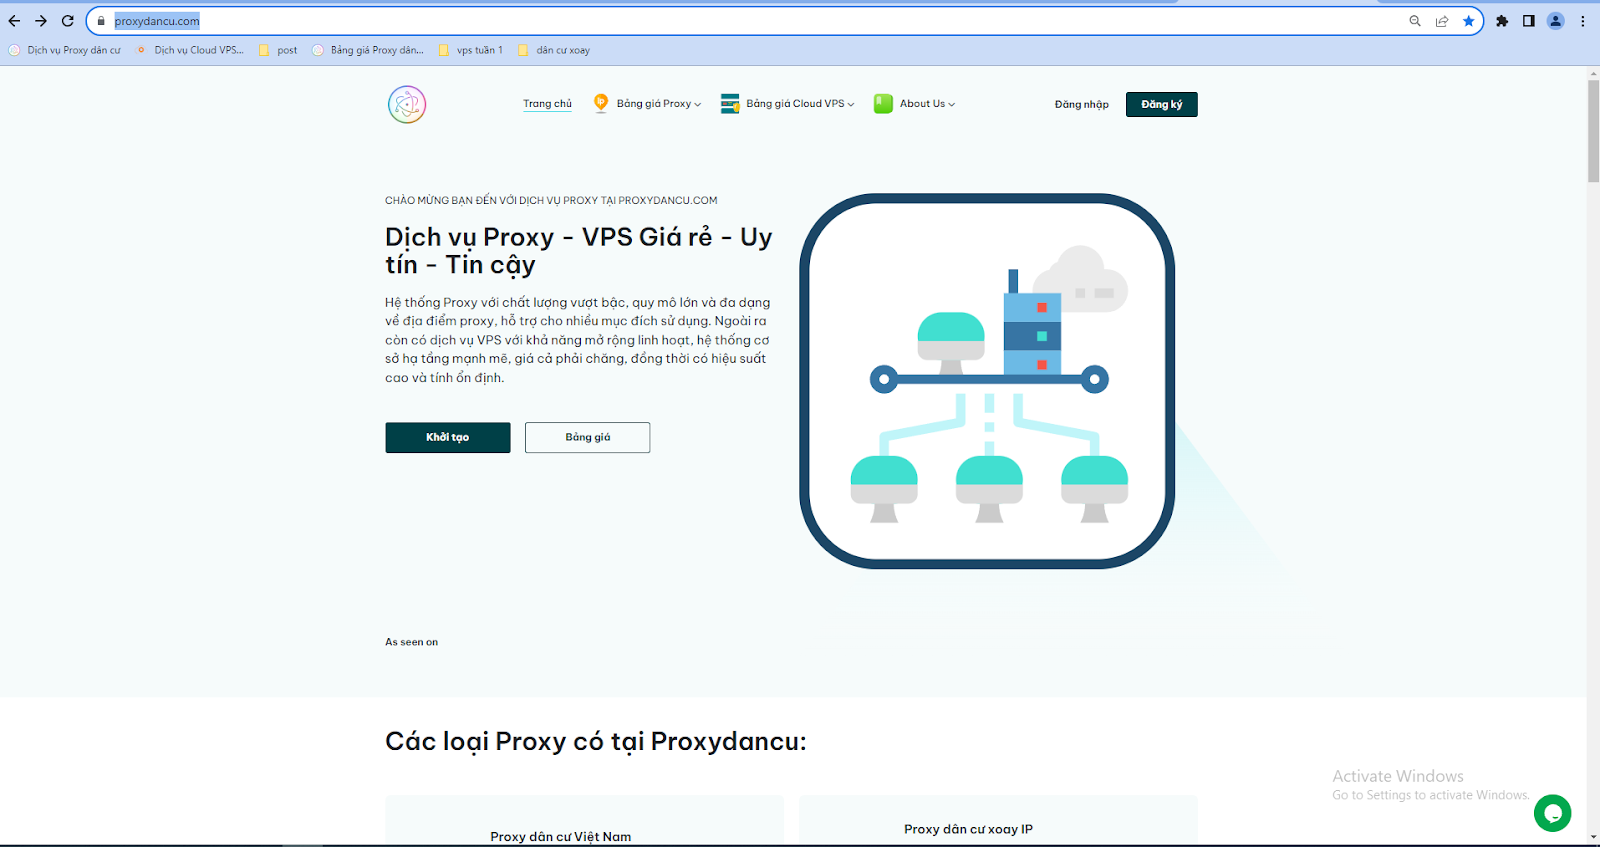 Truy cập vào trang Portal của Proxydancu.com để tạo Proxy nuôi tài khoản